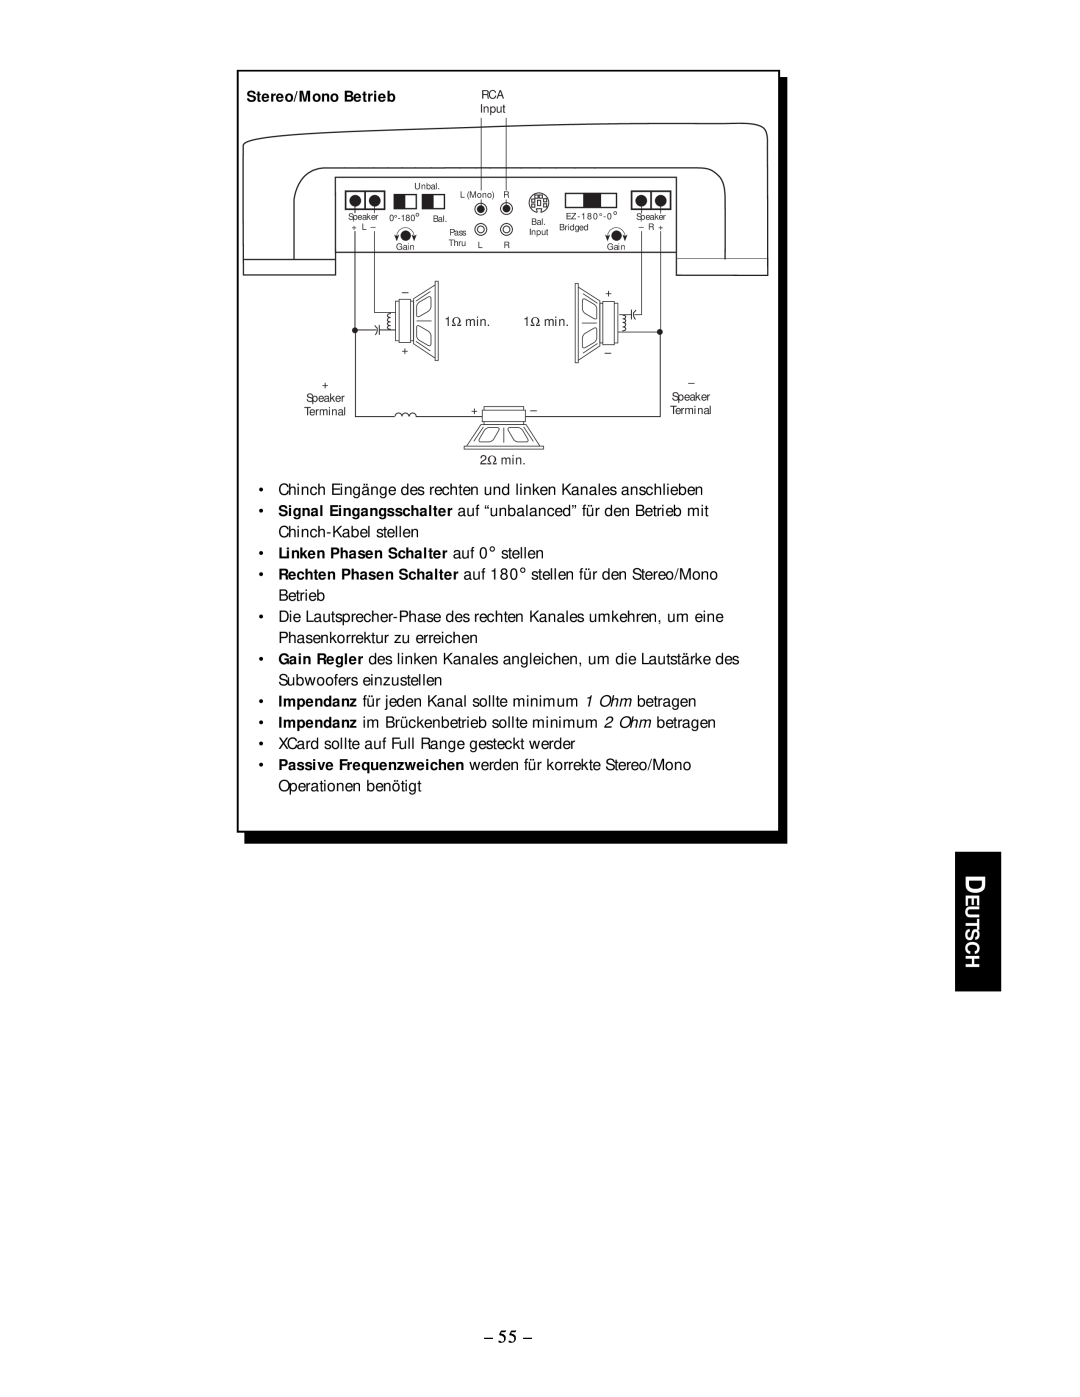 Rockford Fosgate 50.2, 50.1 manual Deutsch, Stereo/Mono Betrieb, Linken Phasen Schalter auf 0 stellen 